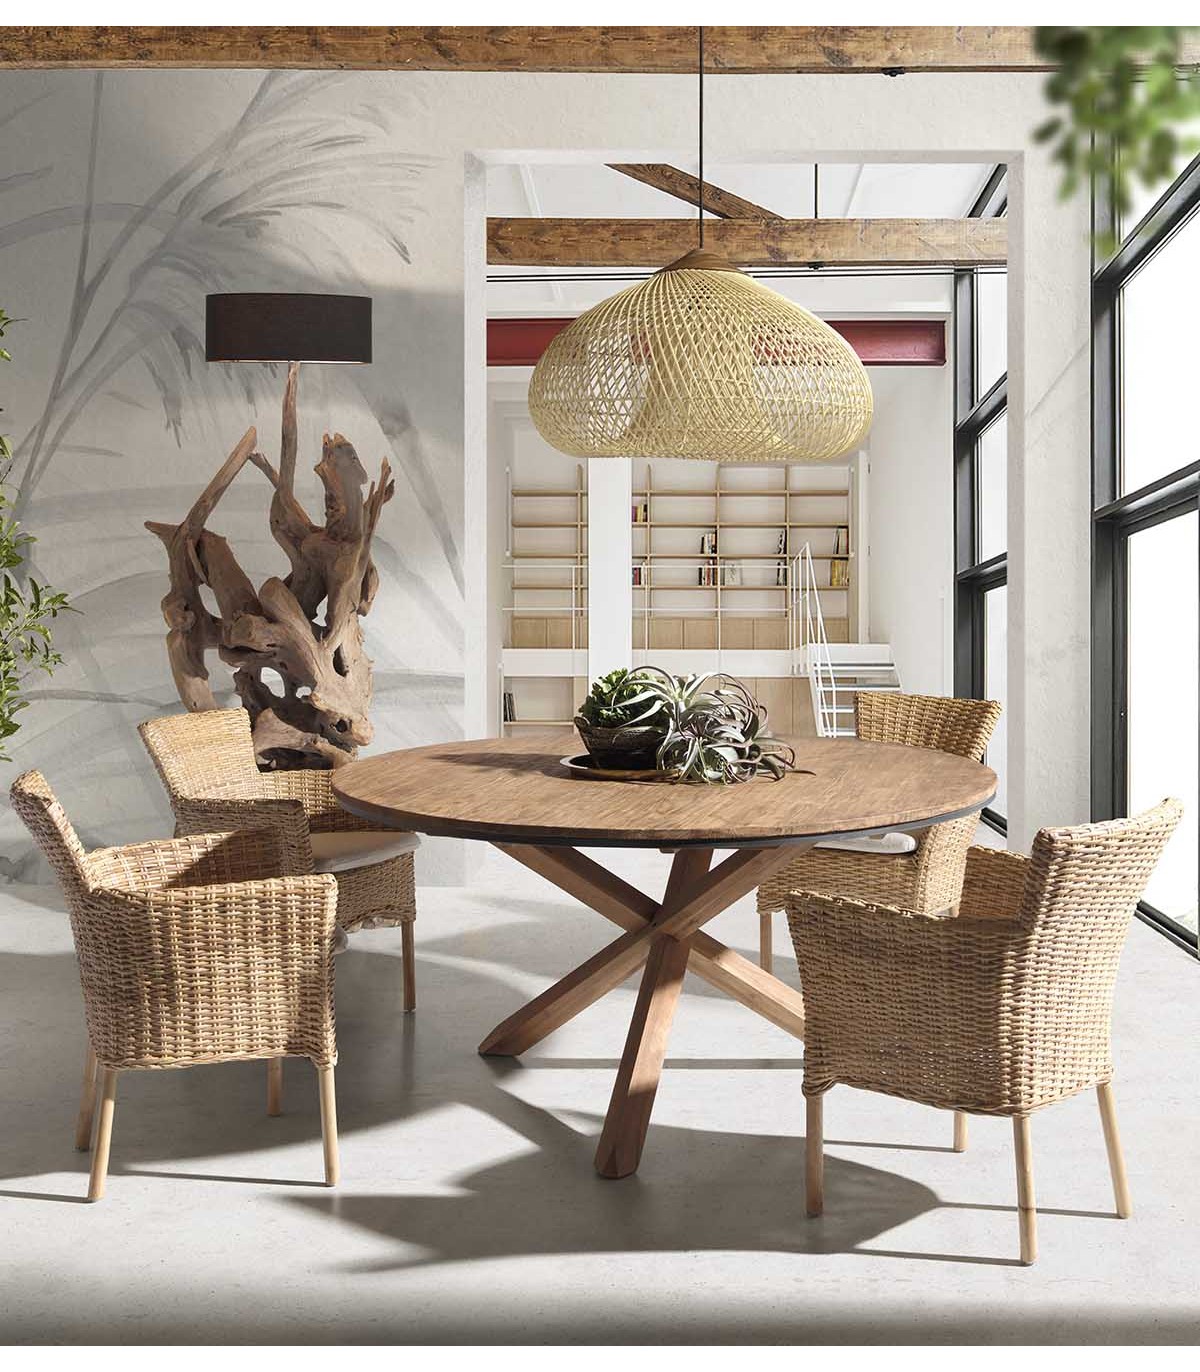 Las mejores ofertas en Naranja Salón Flash Furniture Muebles para el Hogar